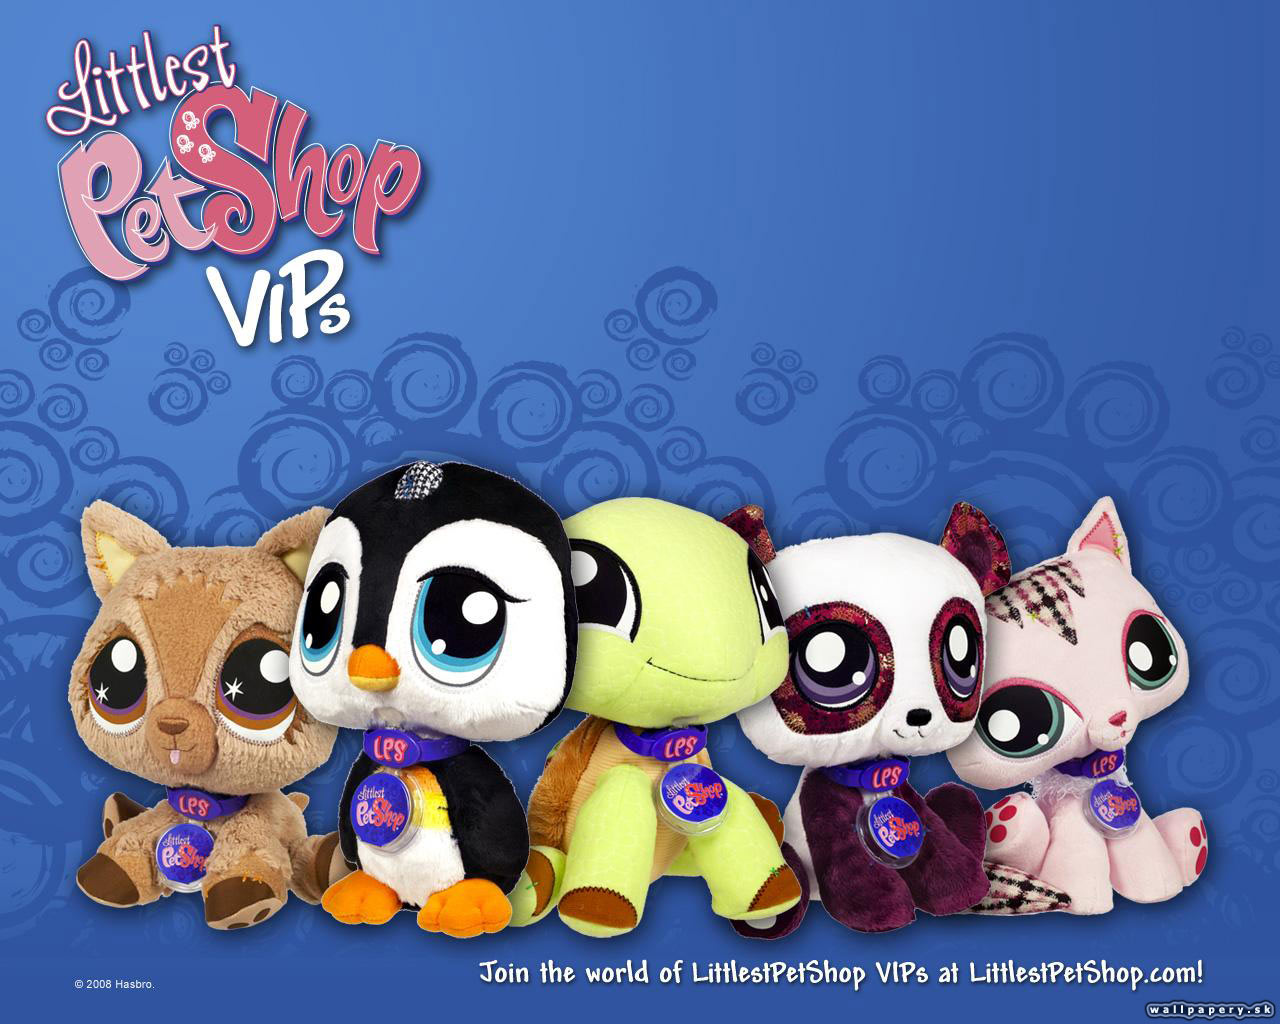 Pet shop remix. Little is Pet shop игра. My Littlest Pet shop игра. Littlest Pet shop 2010. Littlest Pet shop 2011.